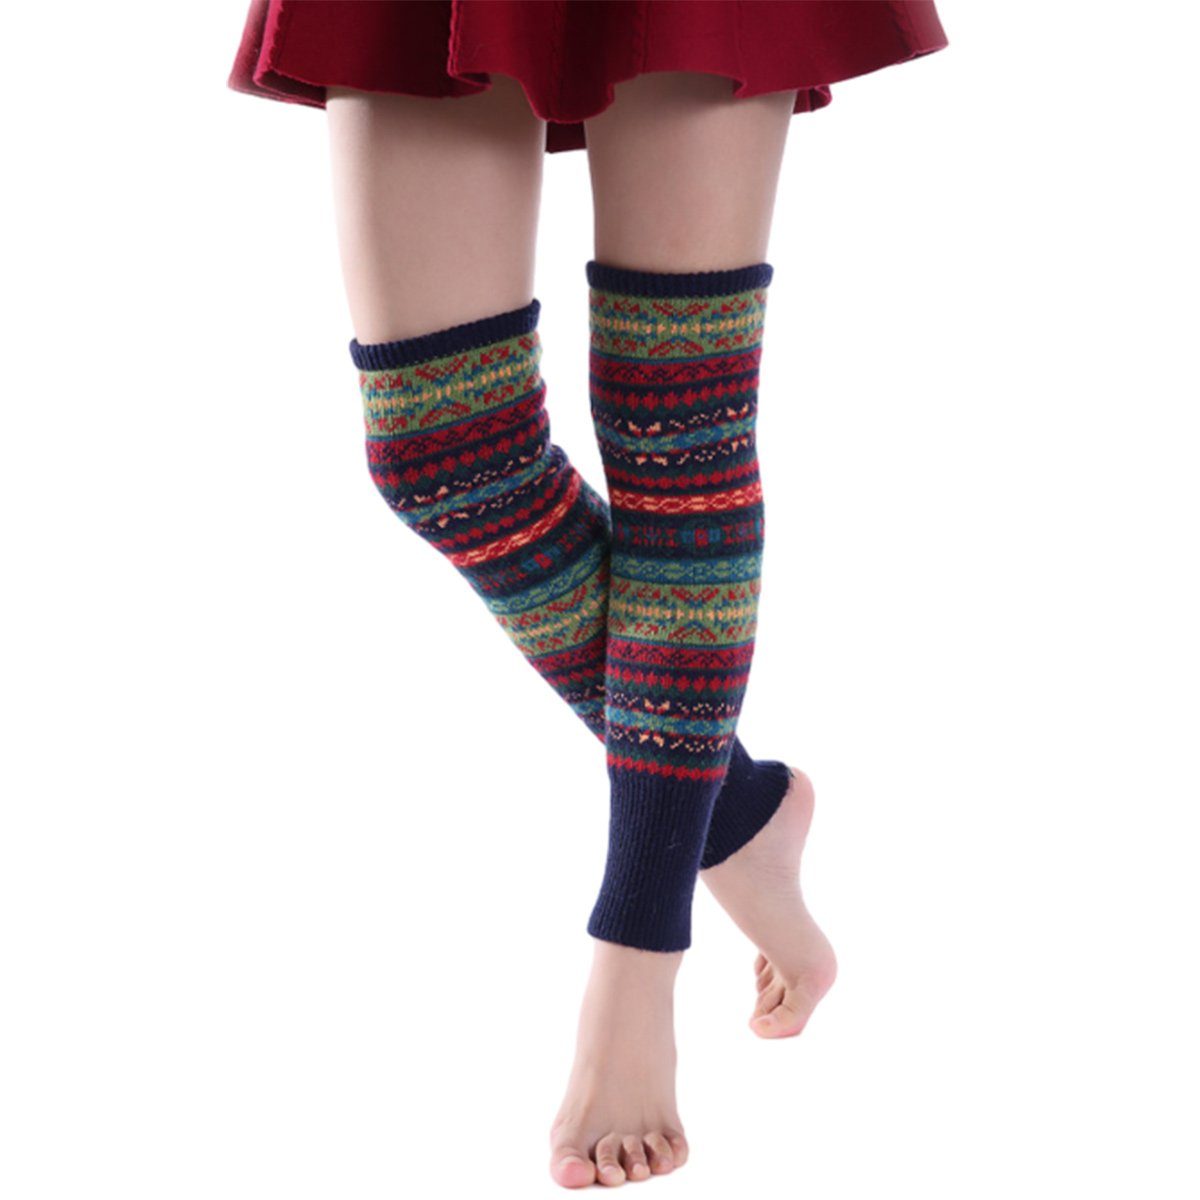 Jormftte Beinstulpen Damen Lange Winter Legwarmer Böhmischer Stil,Knit Socken,für Weihnacht marineblau